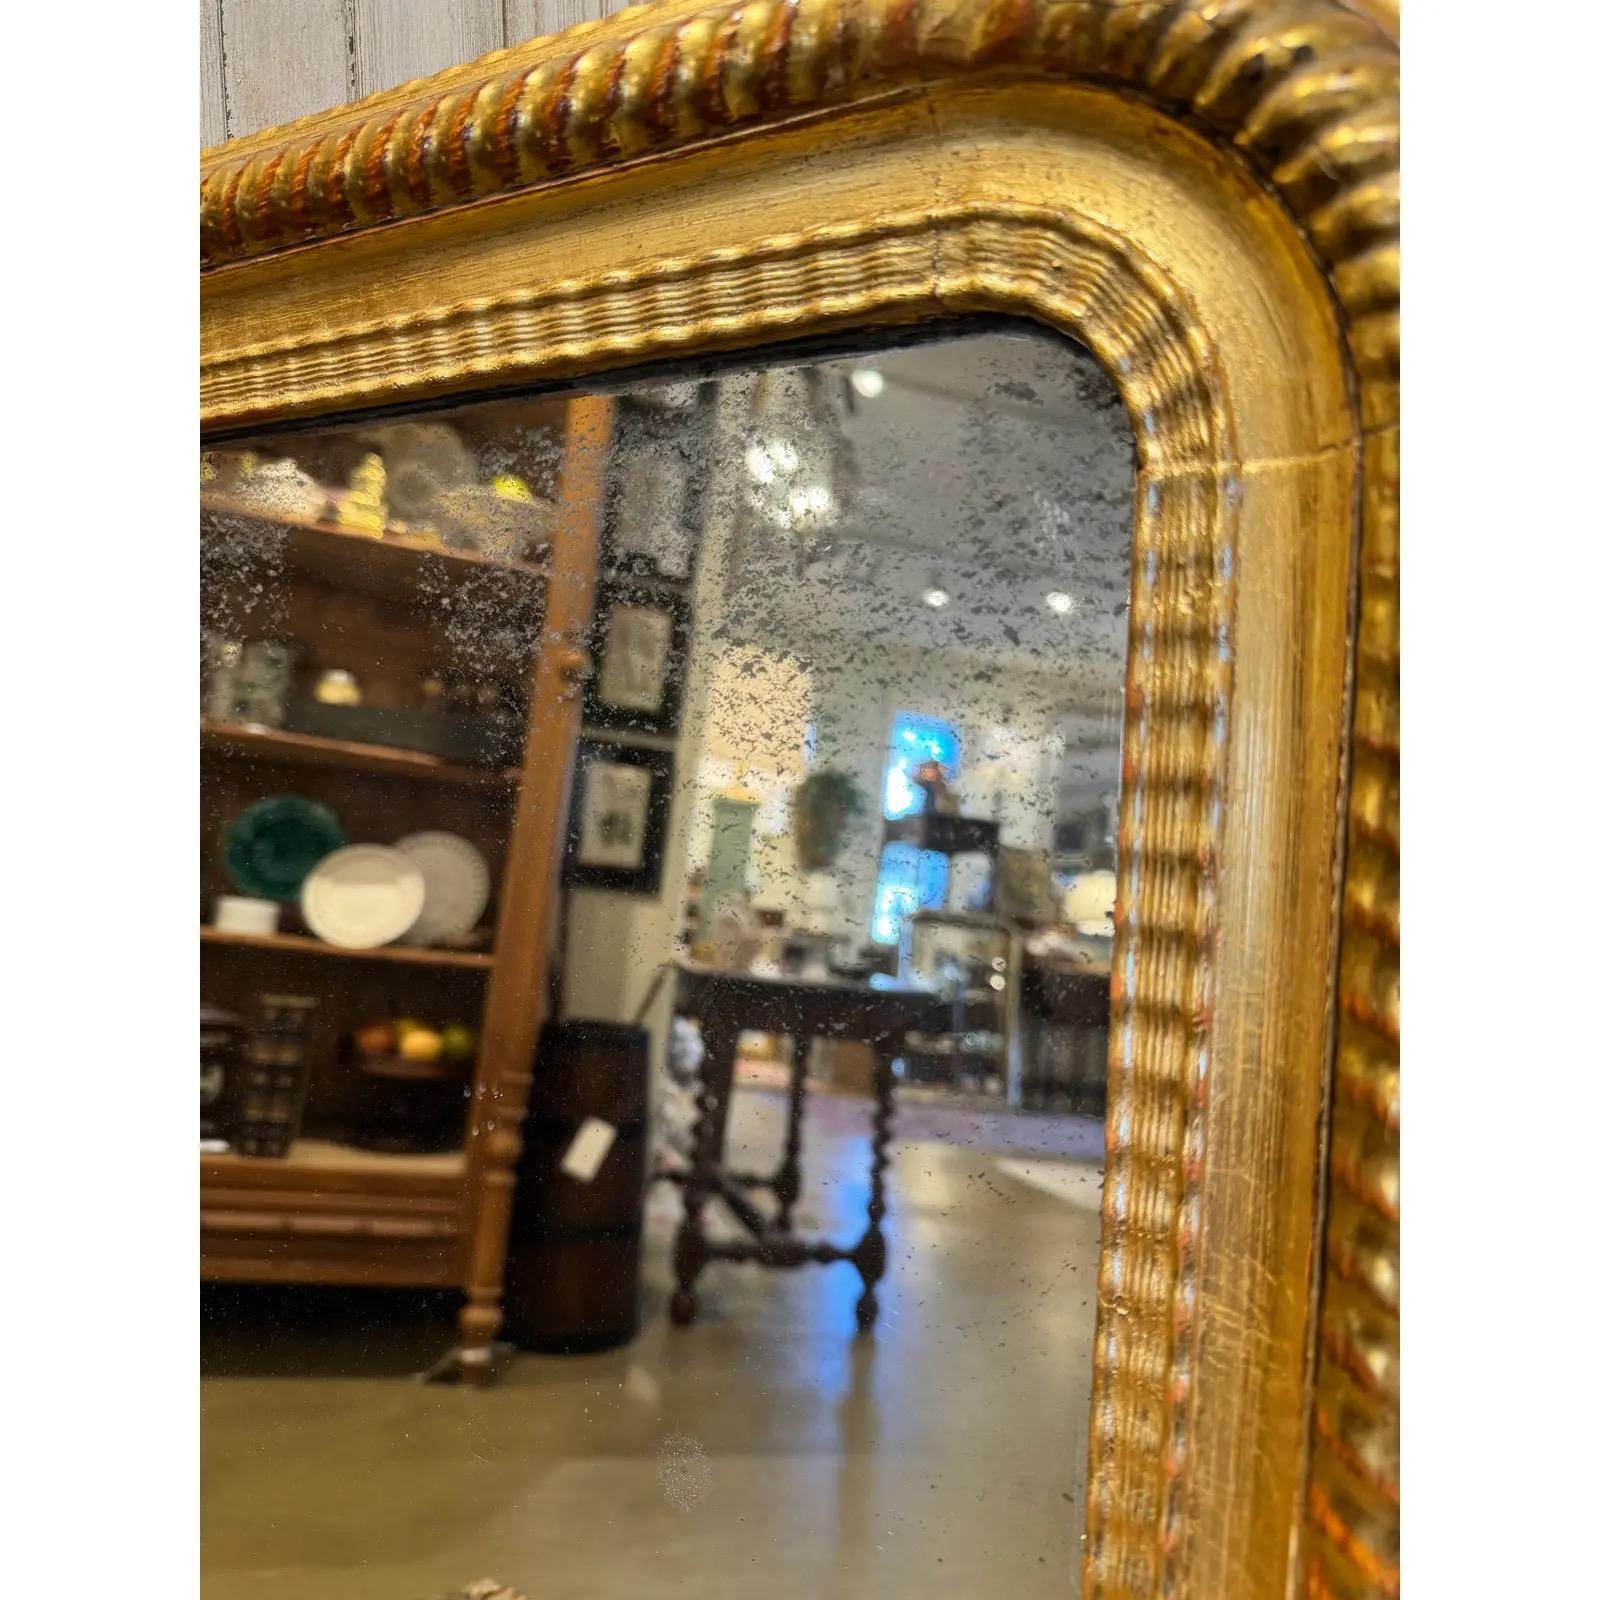 Dieser exquisite antike Louis-Philippe-Spiegel mit vergoldetem Finish verleiht jedem Raum mühelos zeitlosen Charme. Mit seinen verzierten Bändern und seinem klassischen Design ist er ein fesselnder Mittelpunkt, der Stil und Geschichte in einem